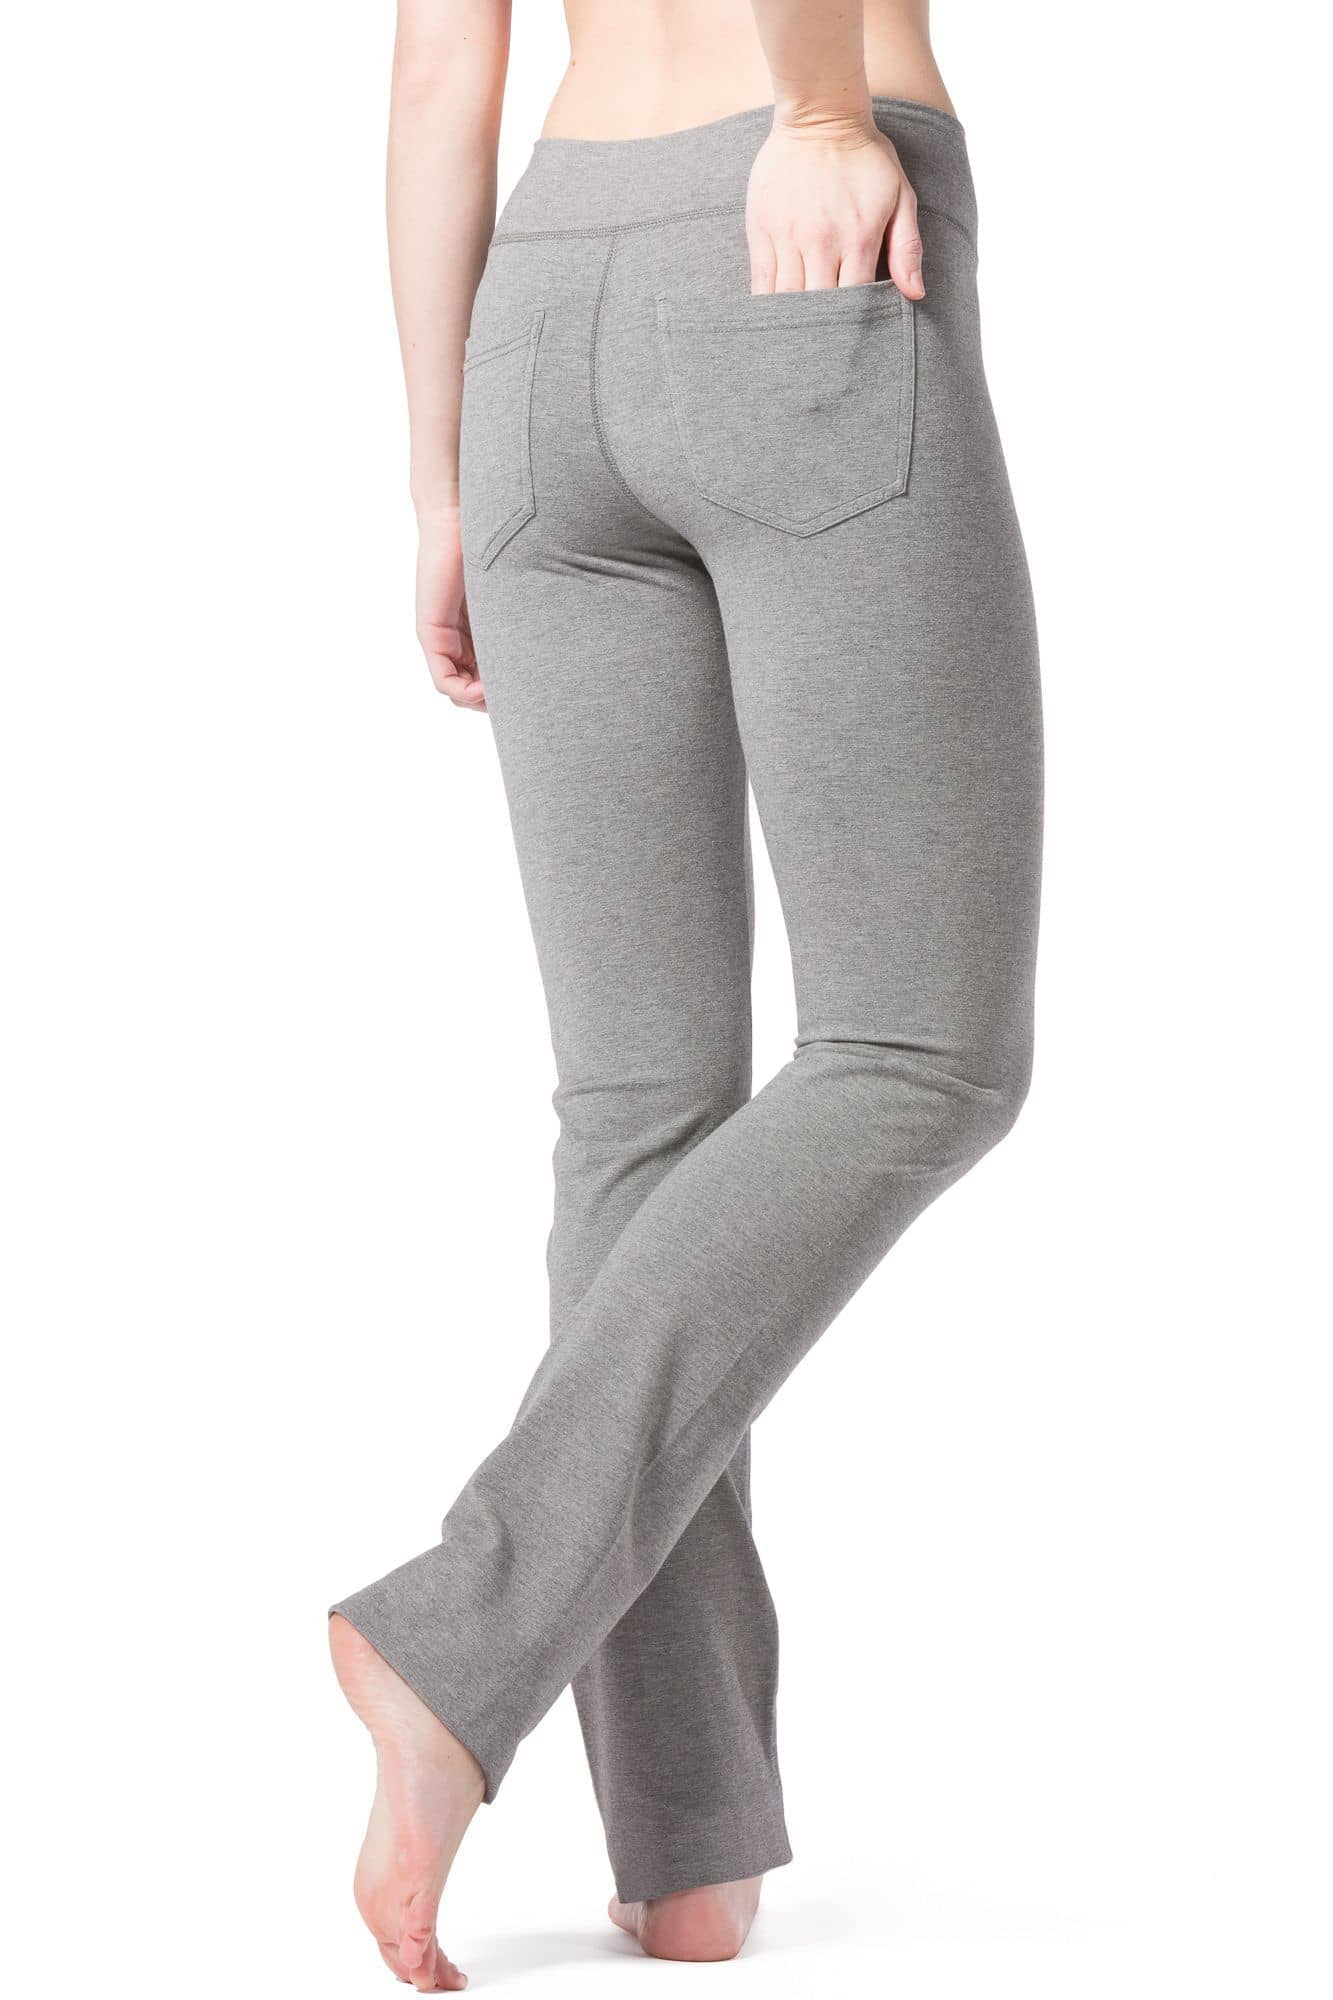  Side Pockets,Womens Straight Leg Yoga Pants Slim